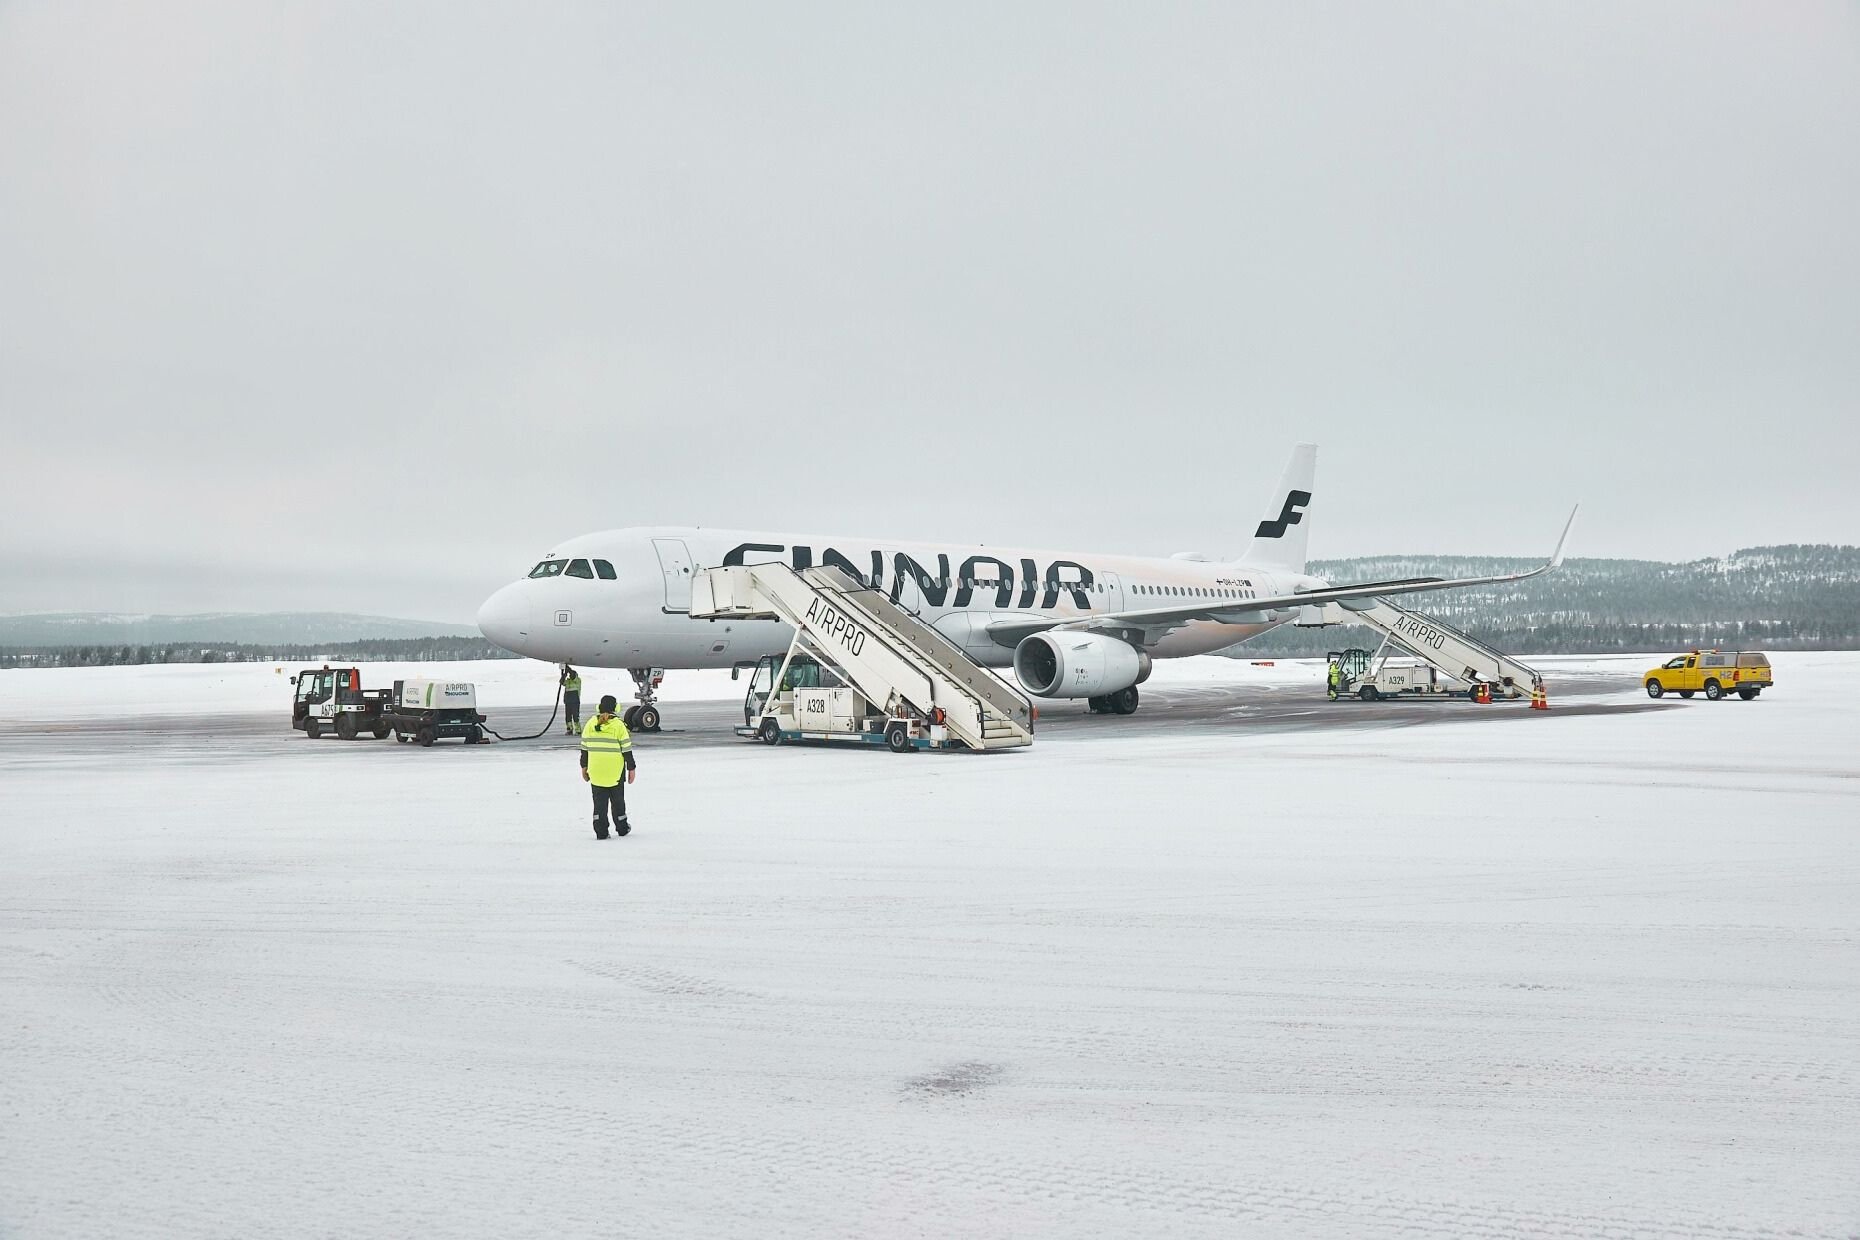 Finnair in winter. Photo: Peter Gudella / Shutterstock.com.